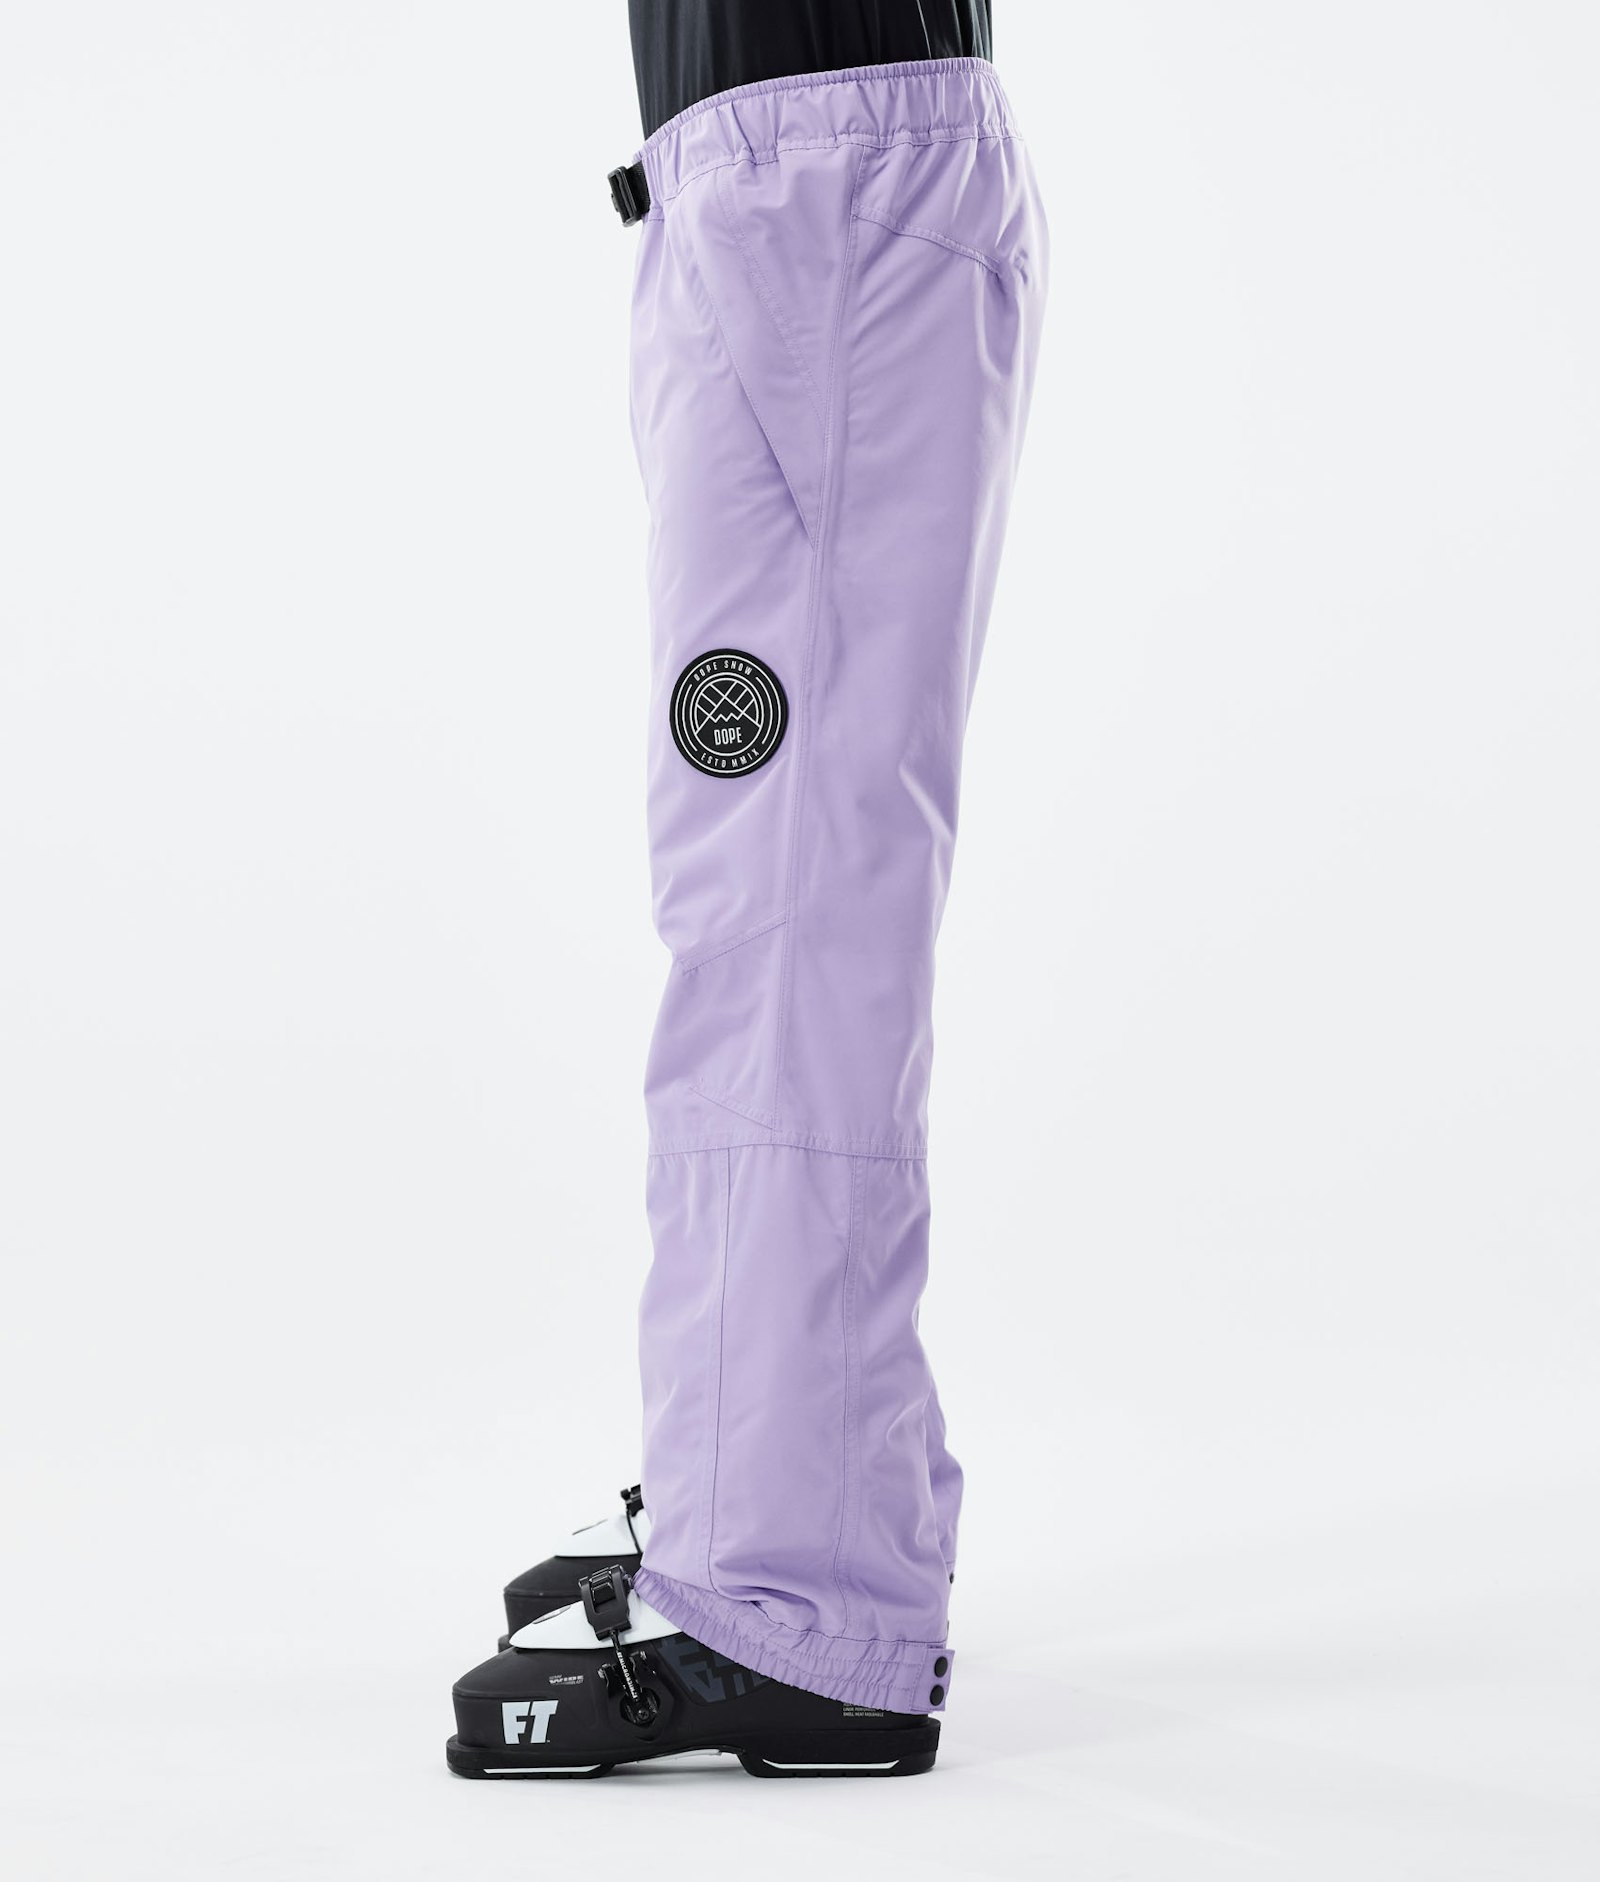 Blizzard 2021 Ski Pants Men Faded Violet